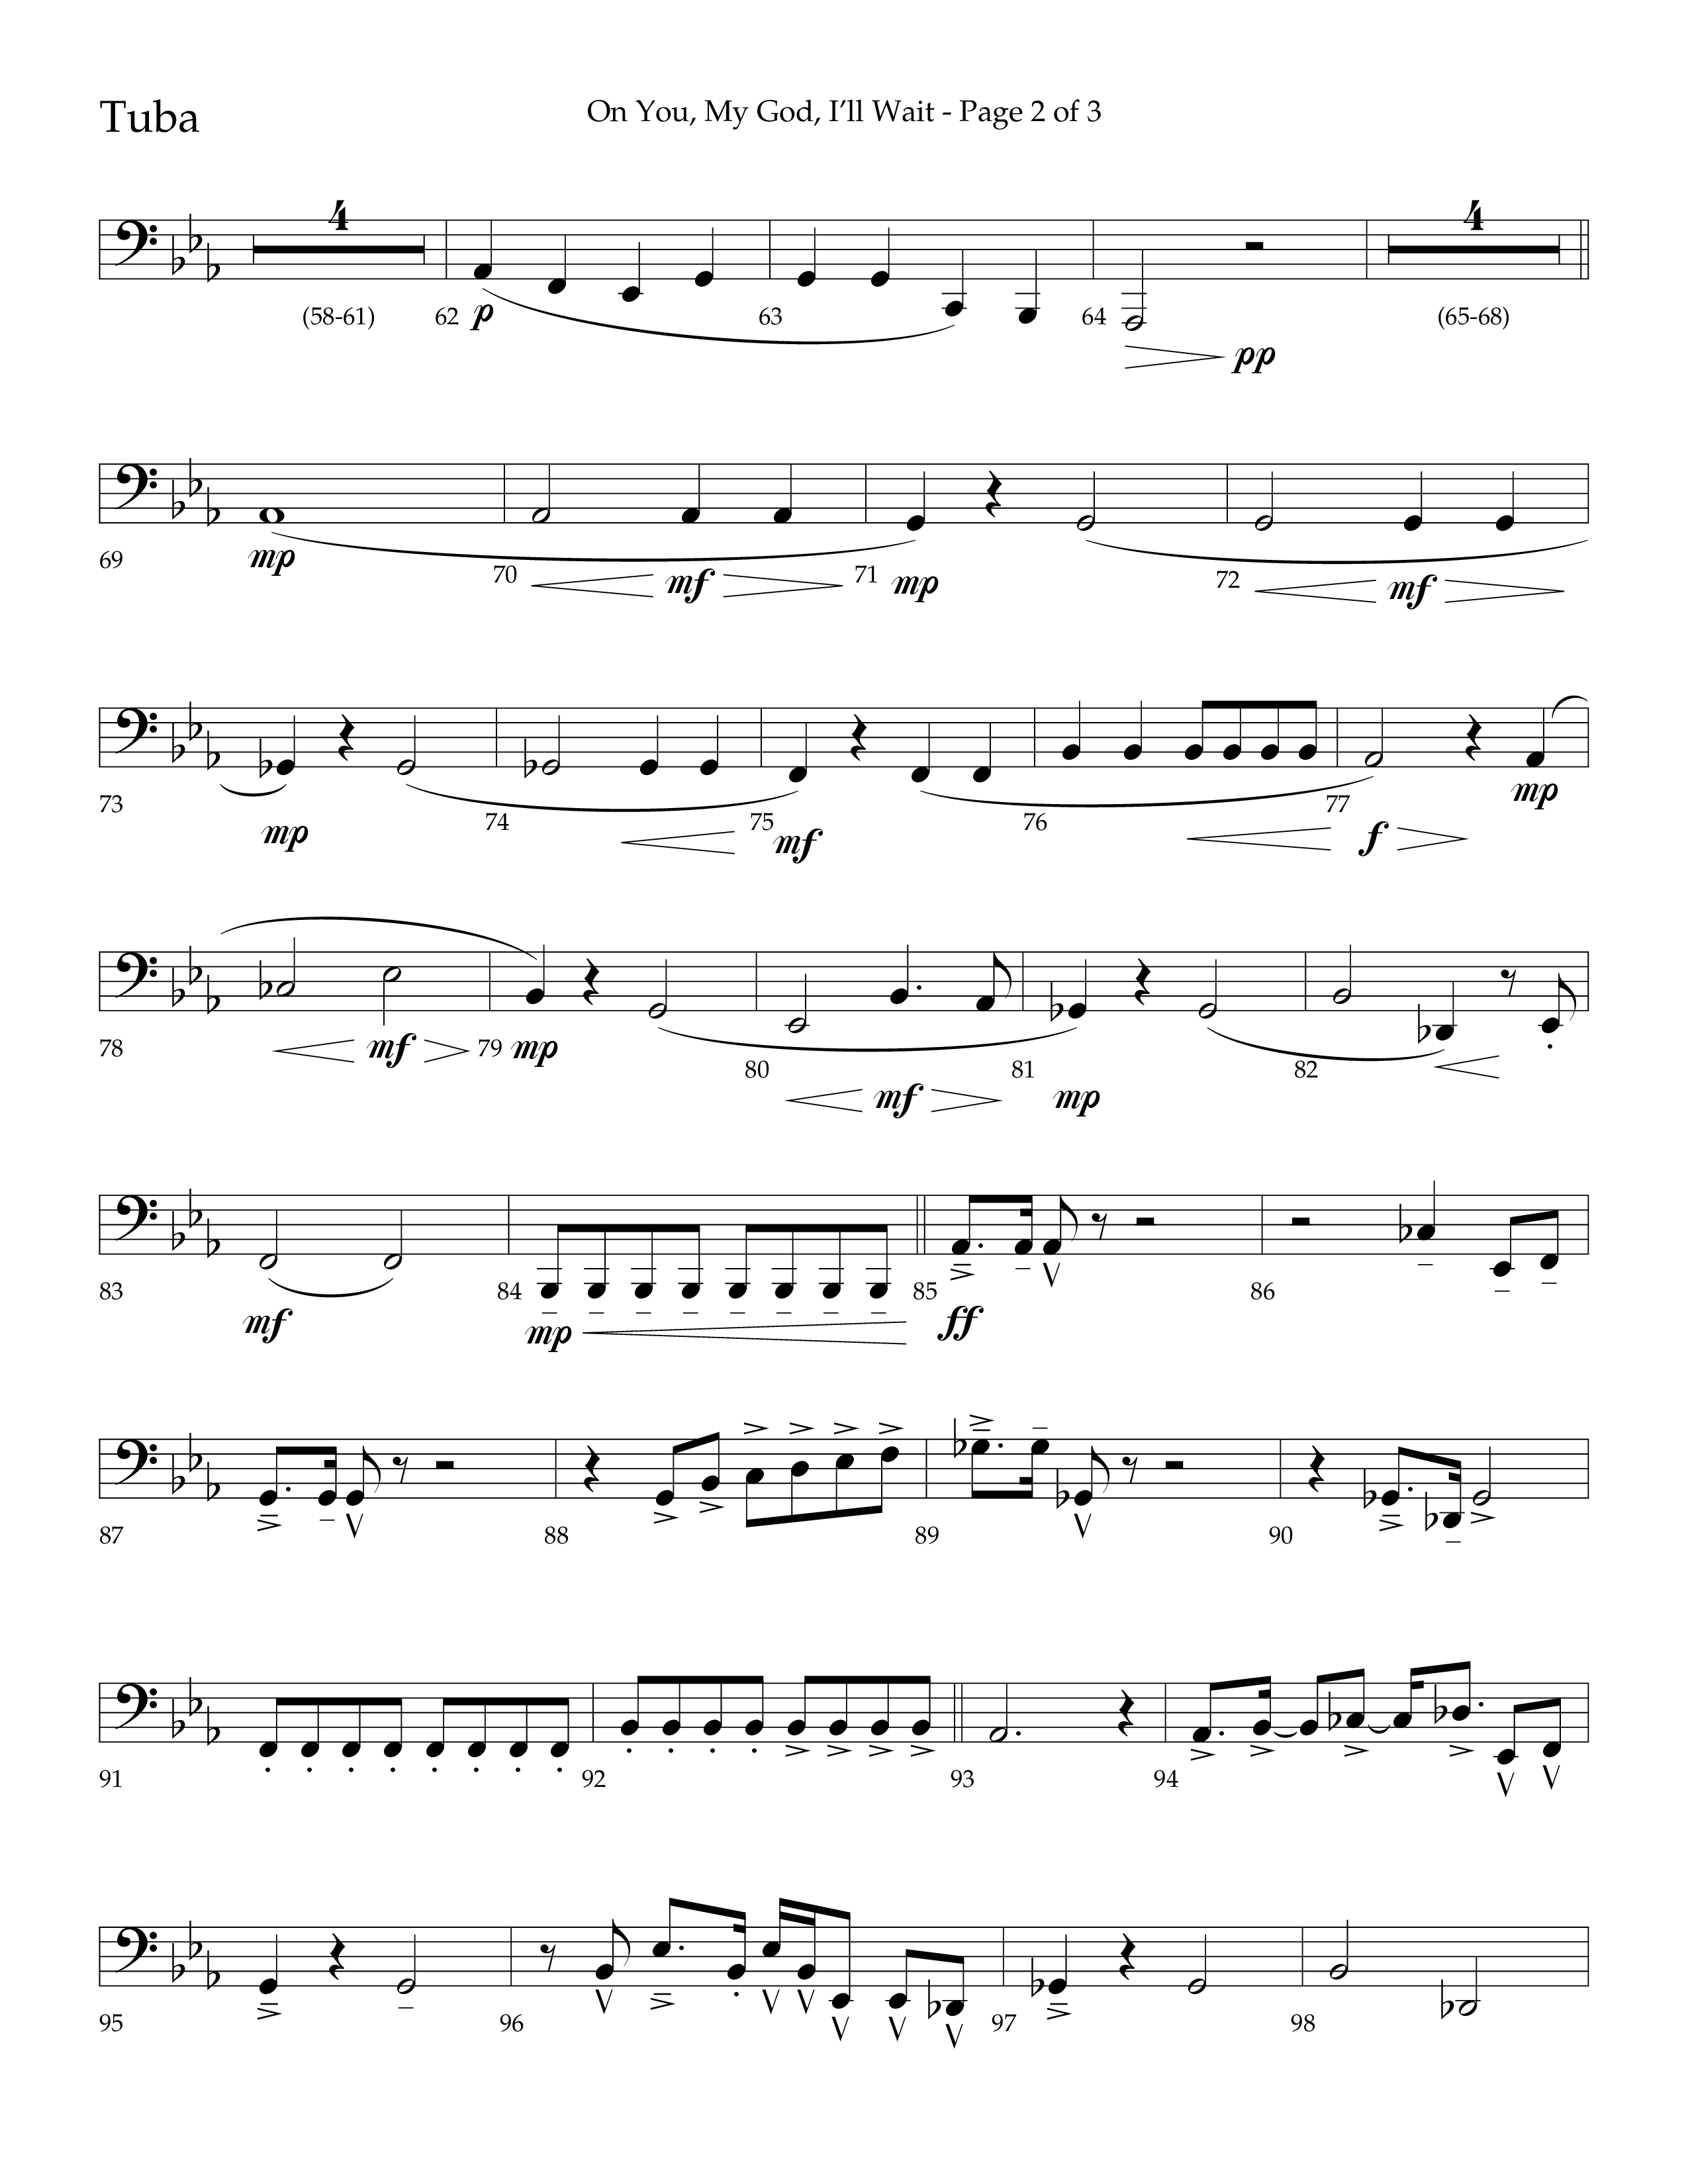 On You My God I'll Wait (Choral Anthem SATB) Tuba (Lifeway Choral / Arr. Craig Adams / Arr. Mike Harland)